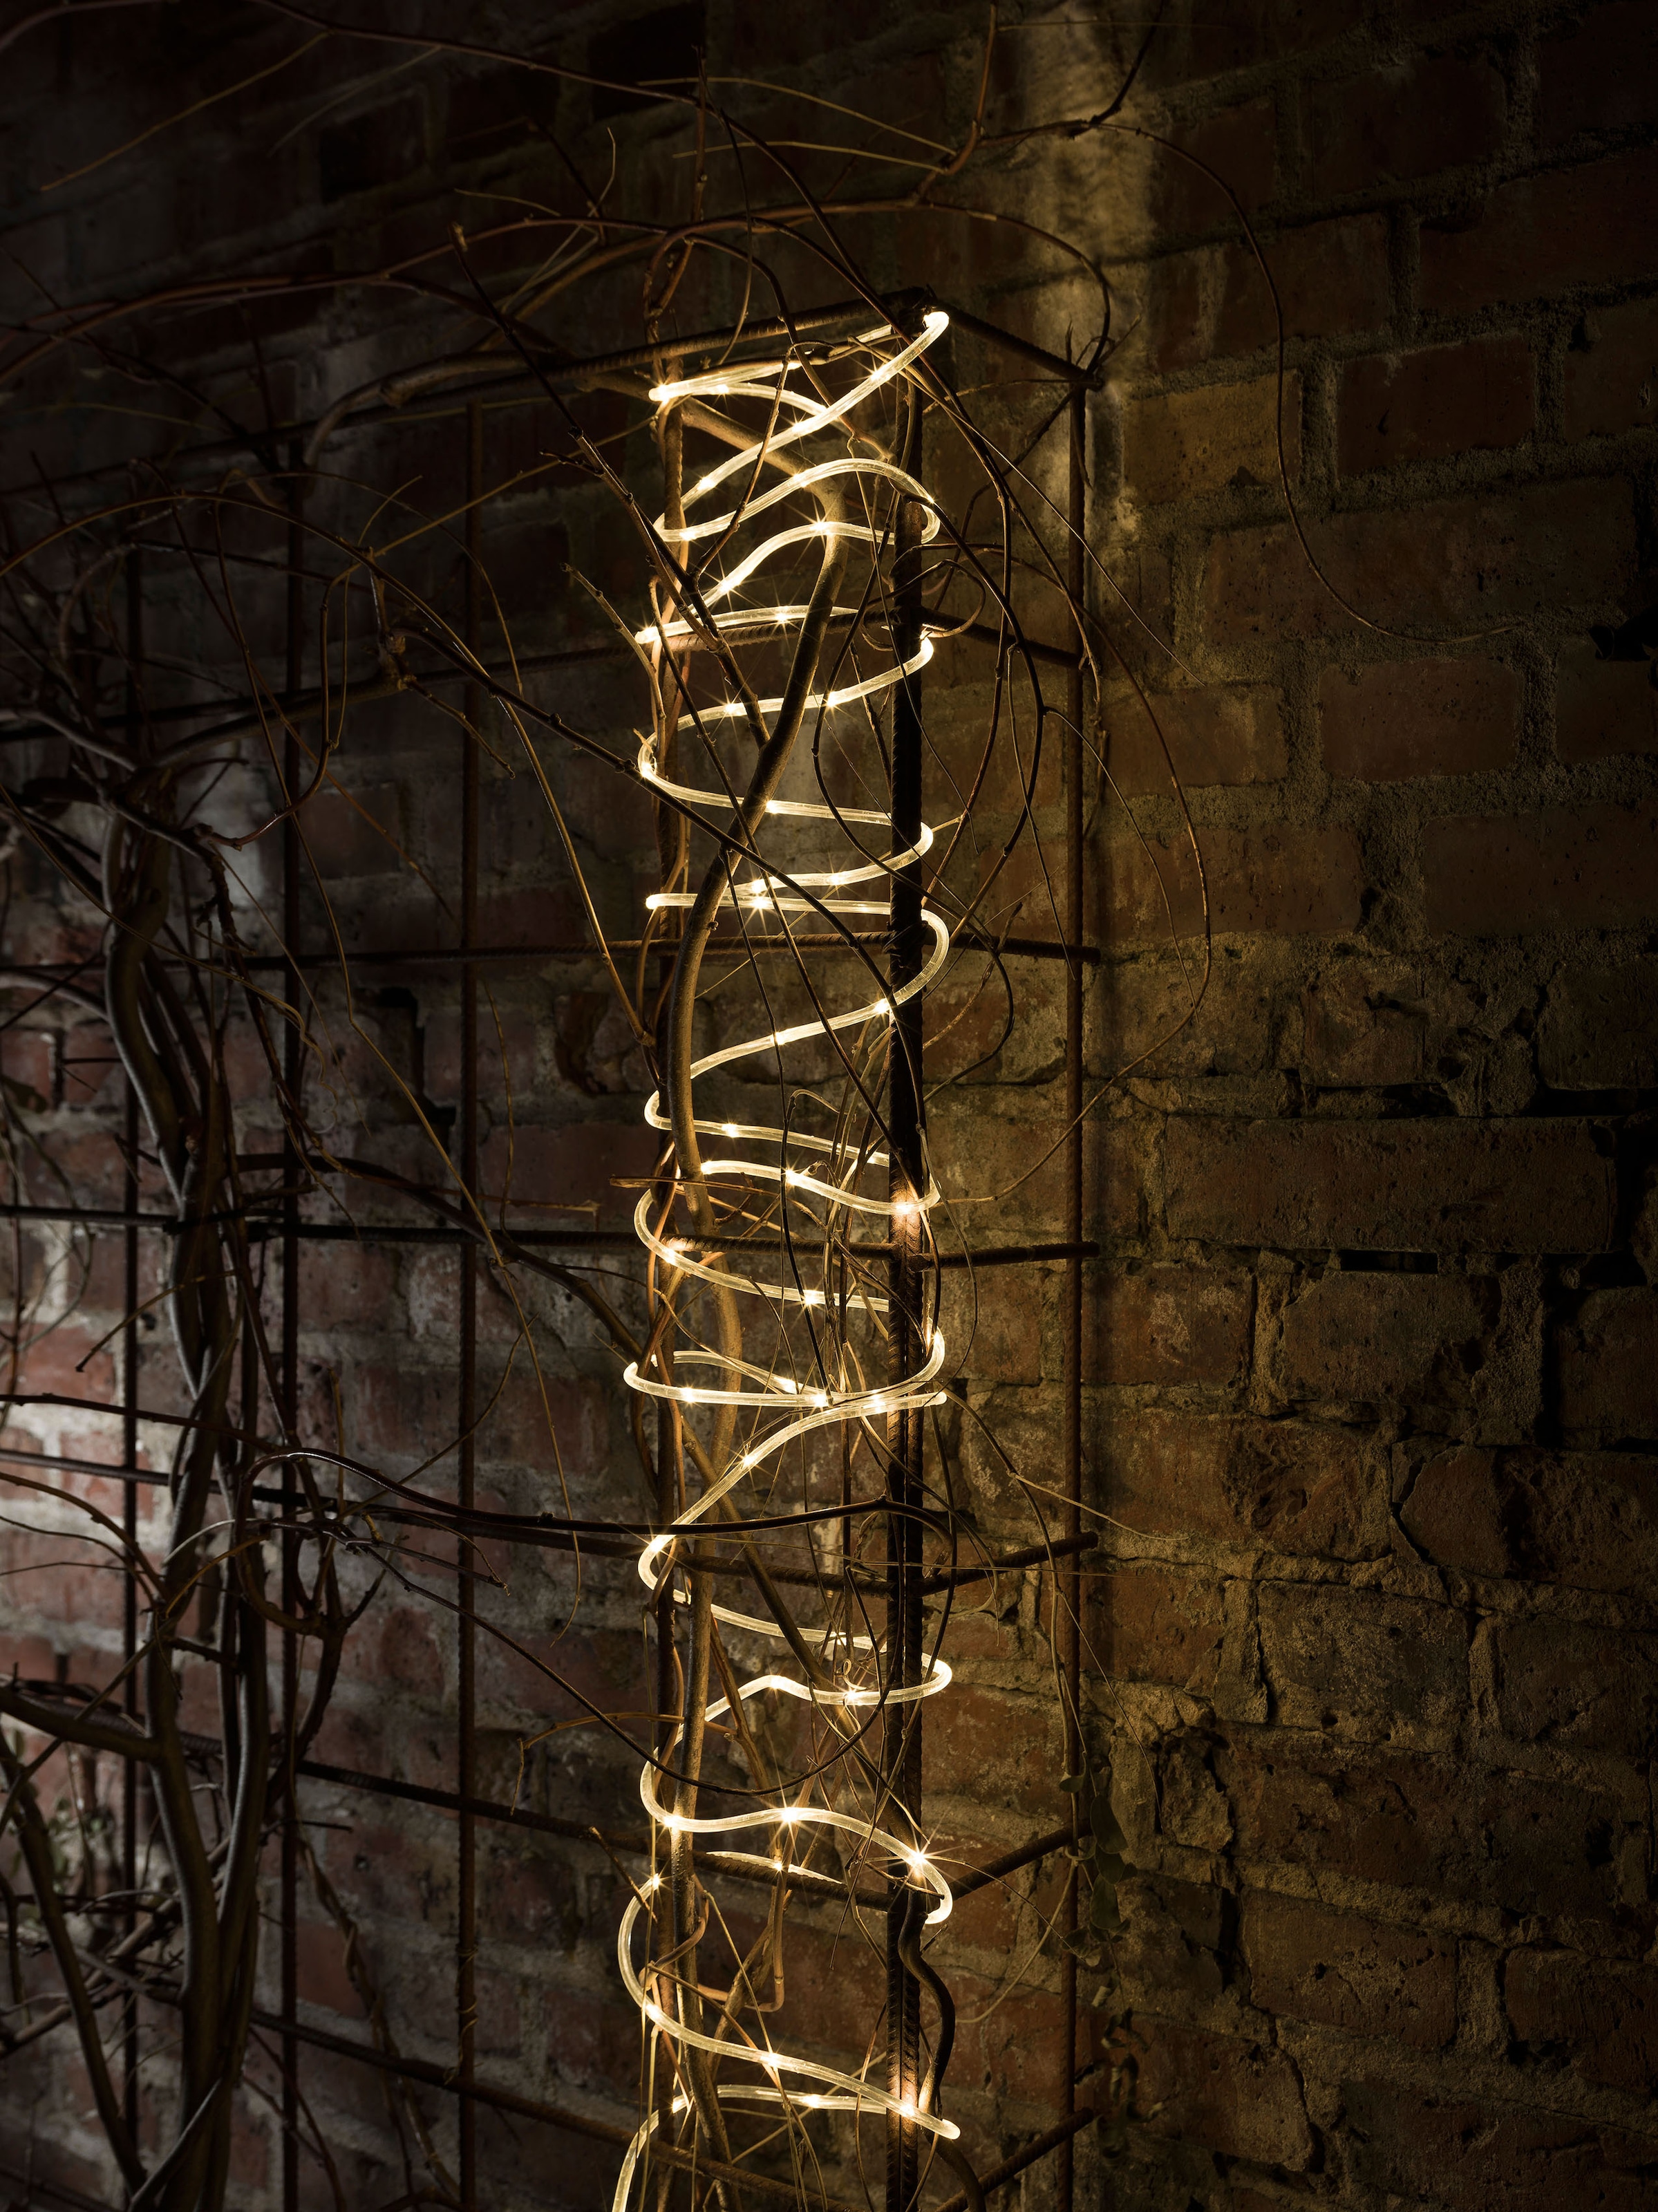 KONSTSMIDE LED-Lichterschlauch »Weihnachtsdeko aussen«, 65 St.-flammig, LED Mini Lichterschlauch, 5 m, 65 warm weiße Dioden